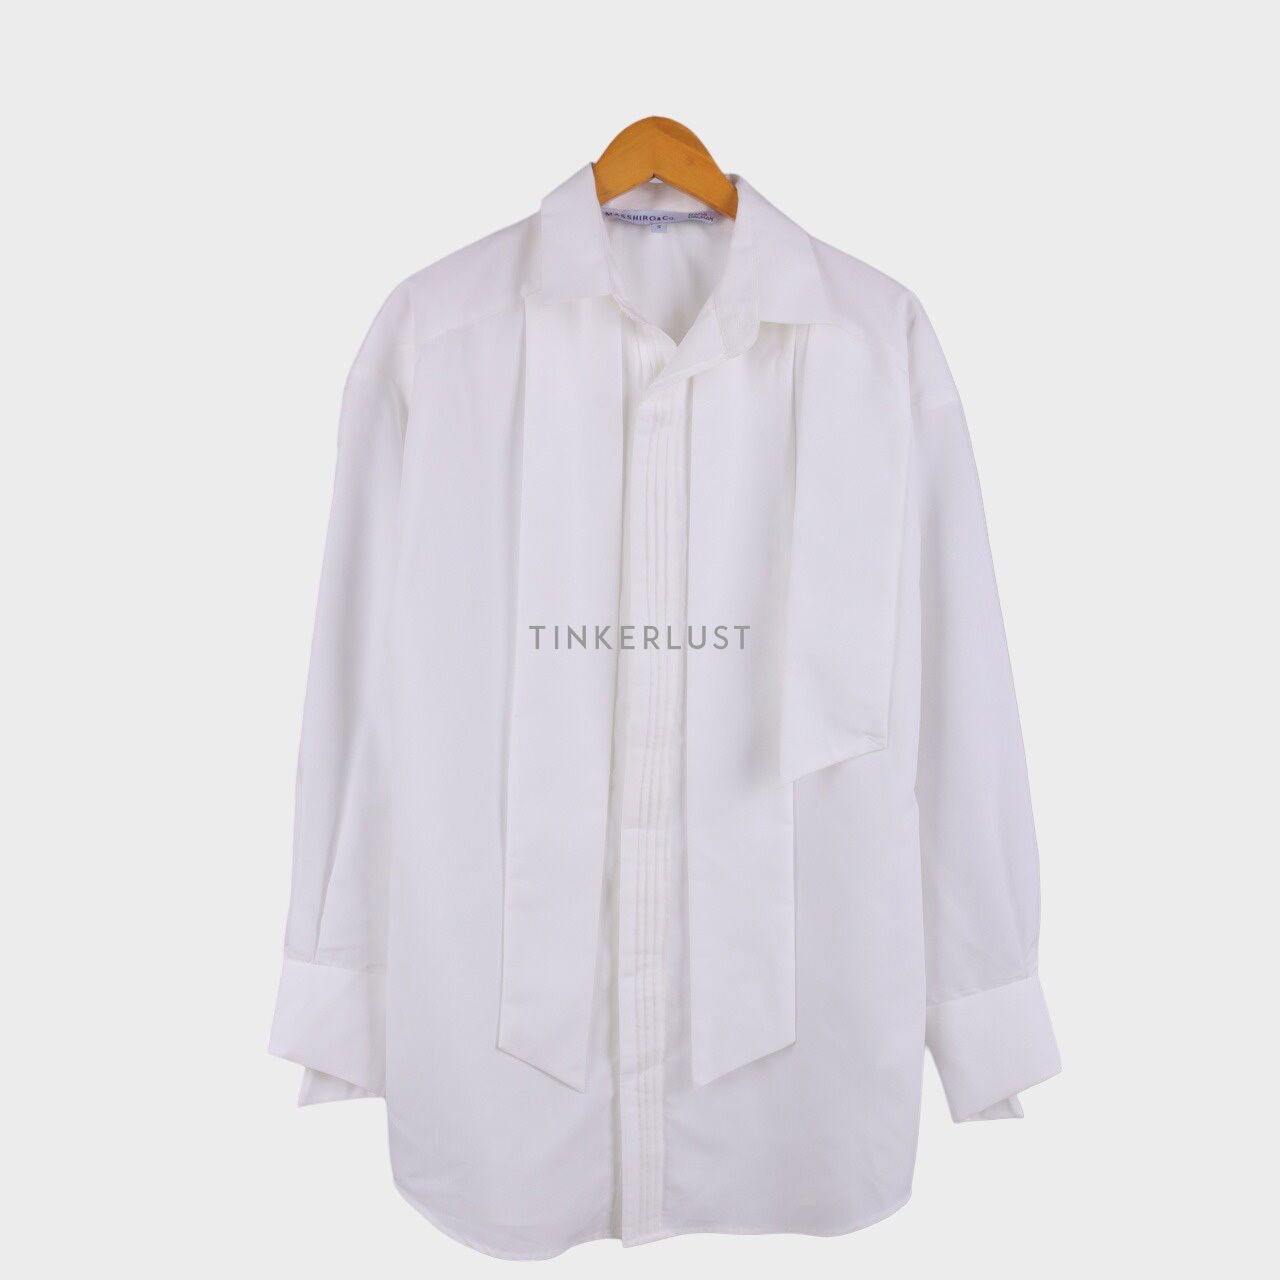 MASSHIRO&Co. X RAMA DAUHAN White Tunic Shirt